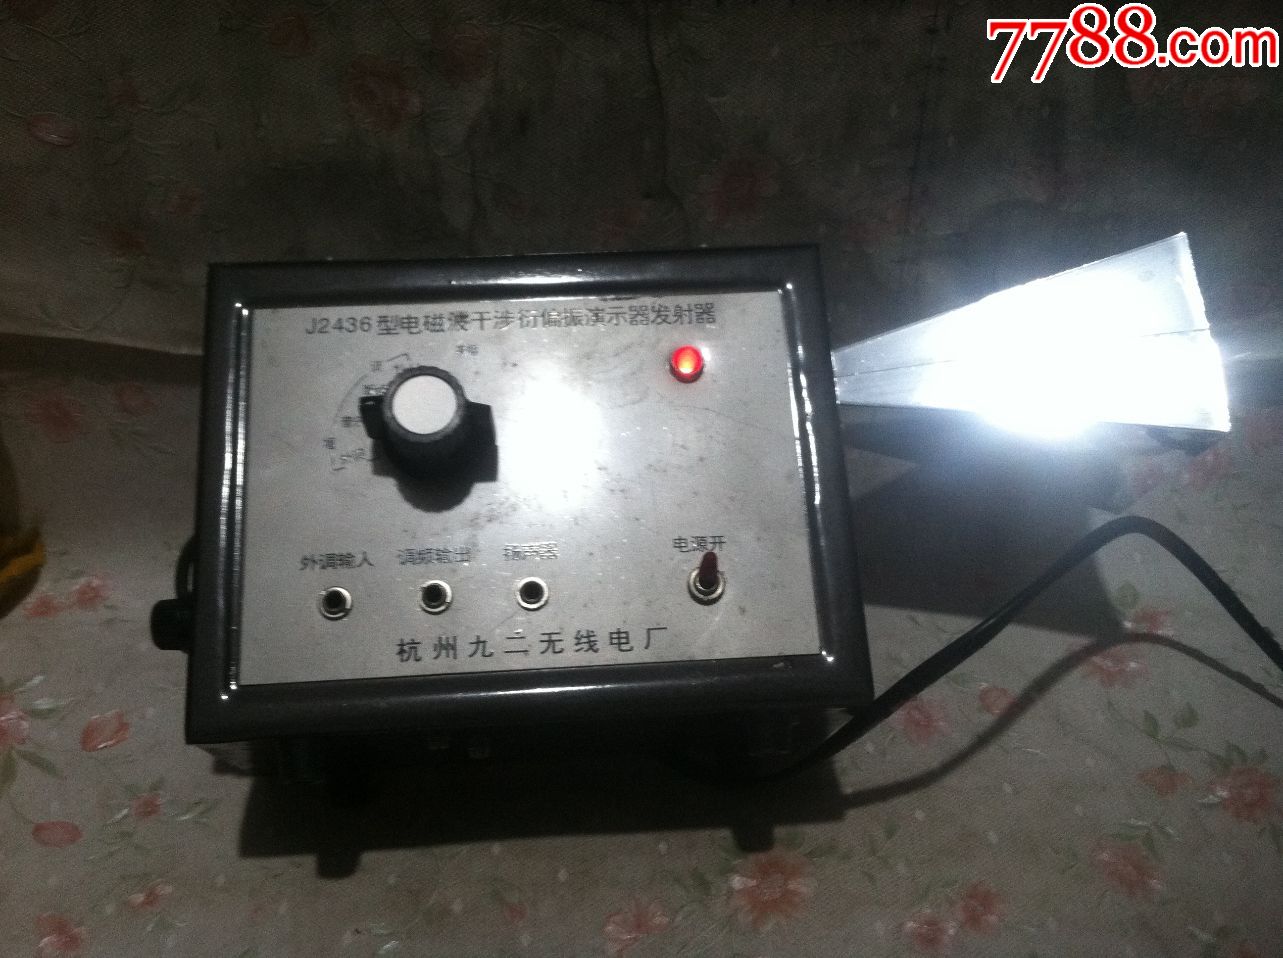 杭州九二无线电厂出品--j12436型电磁波干涉衍偏振演示器发射器